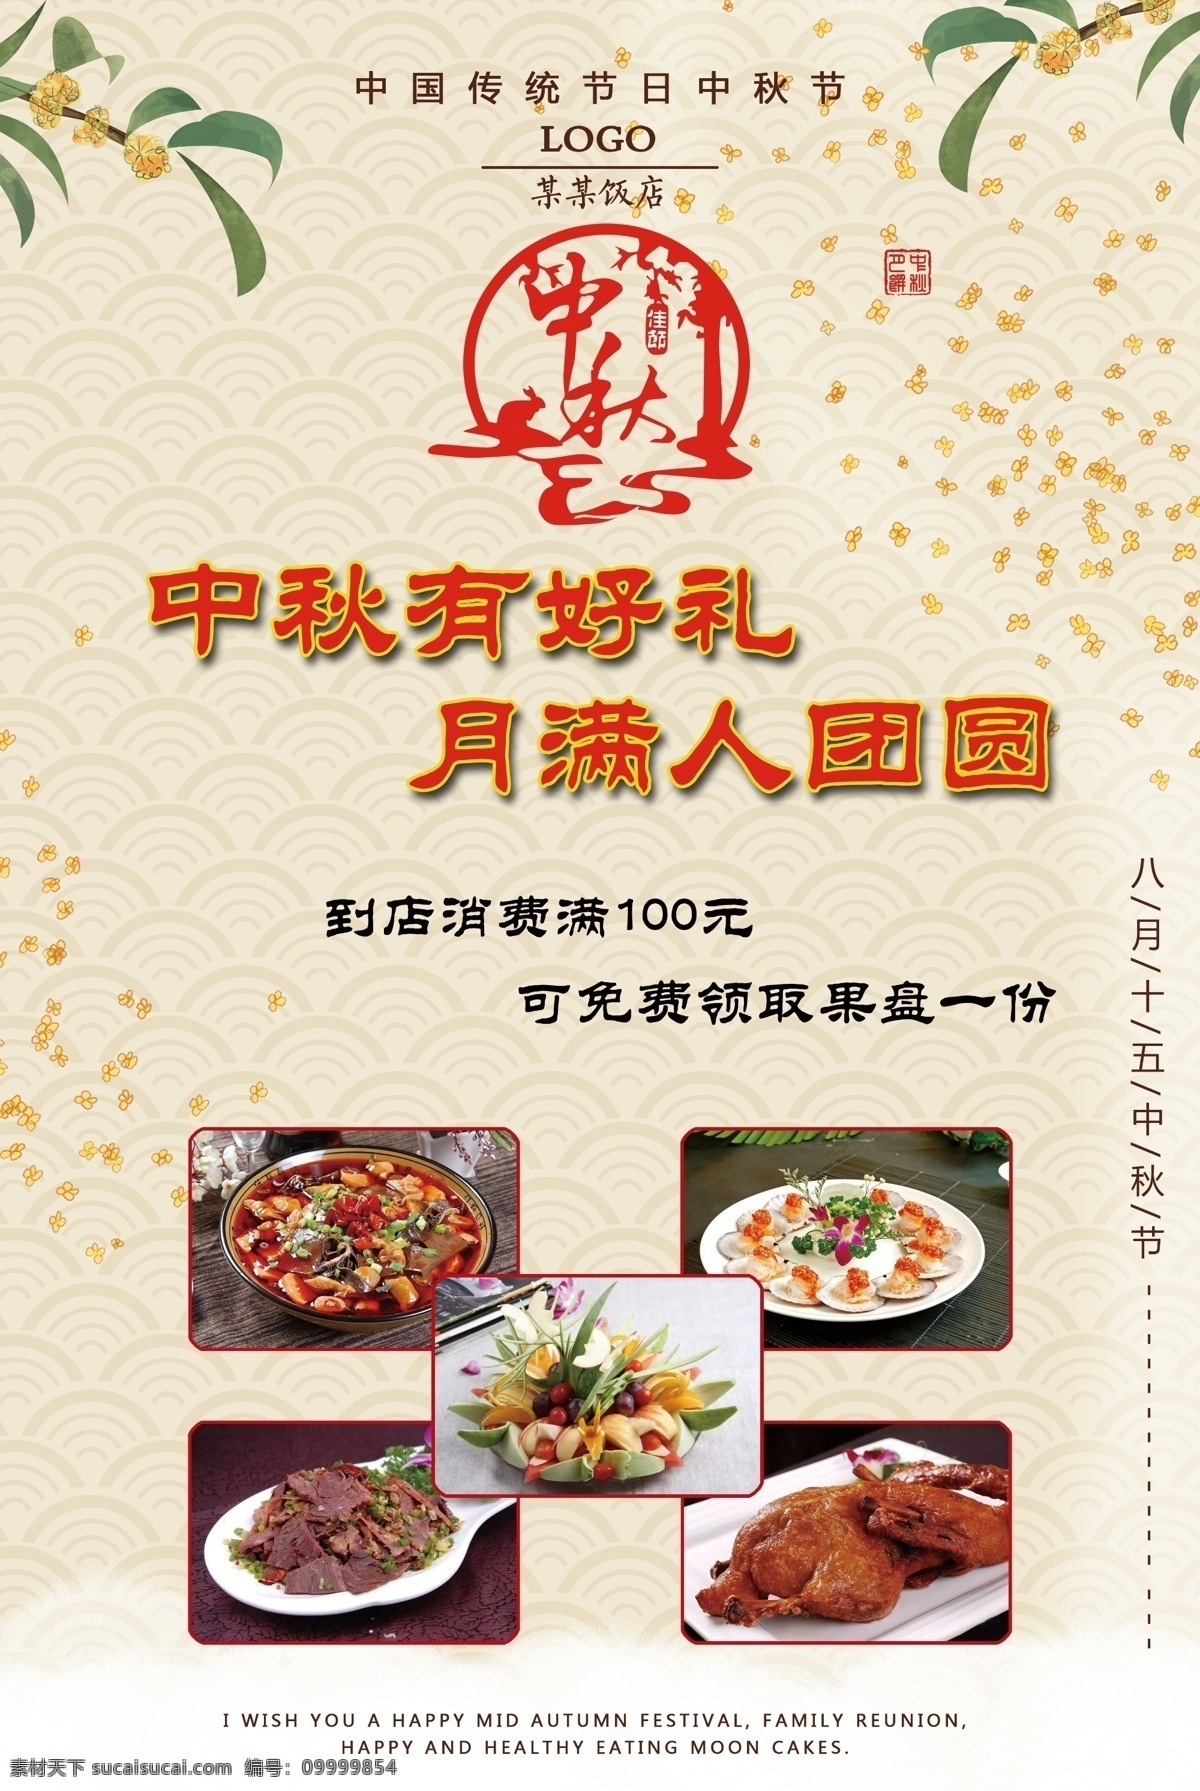 中秋宣传单 中秋 饭店 宣传单 单页 第一册 菜单菜谱